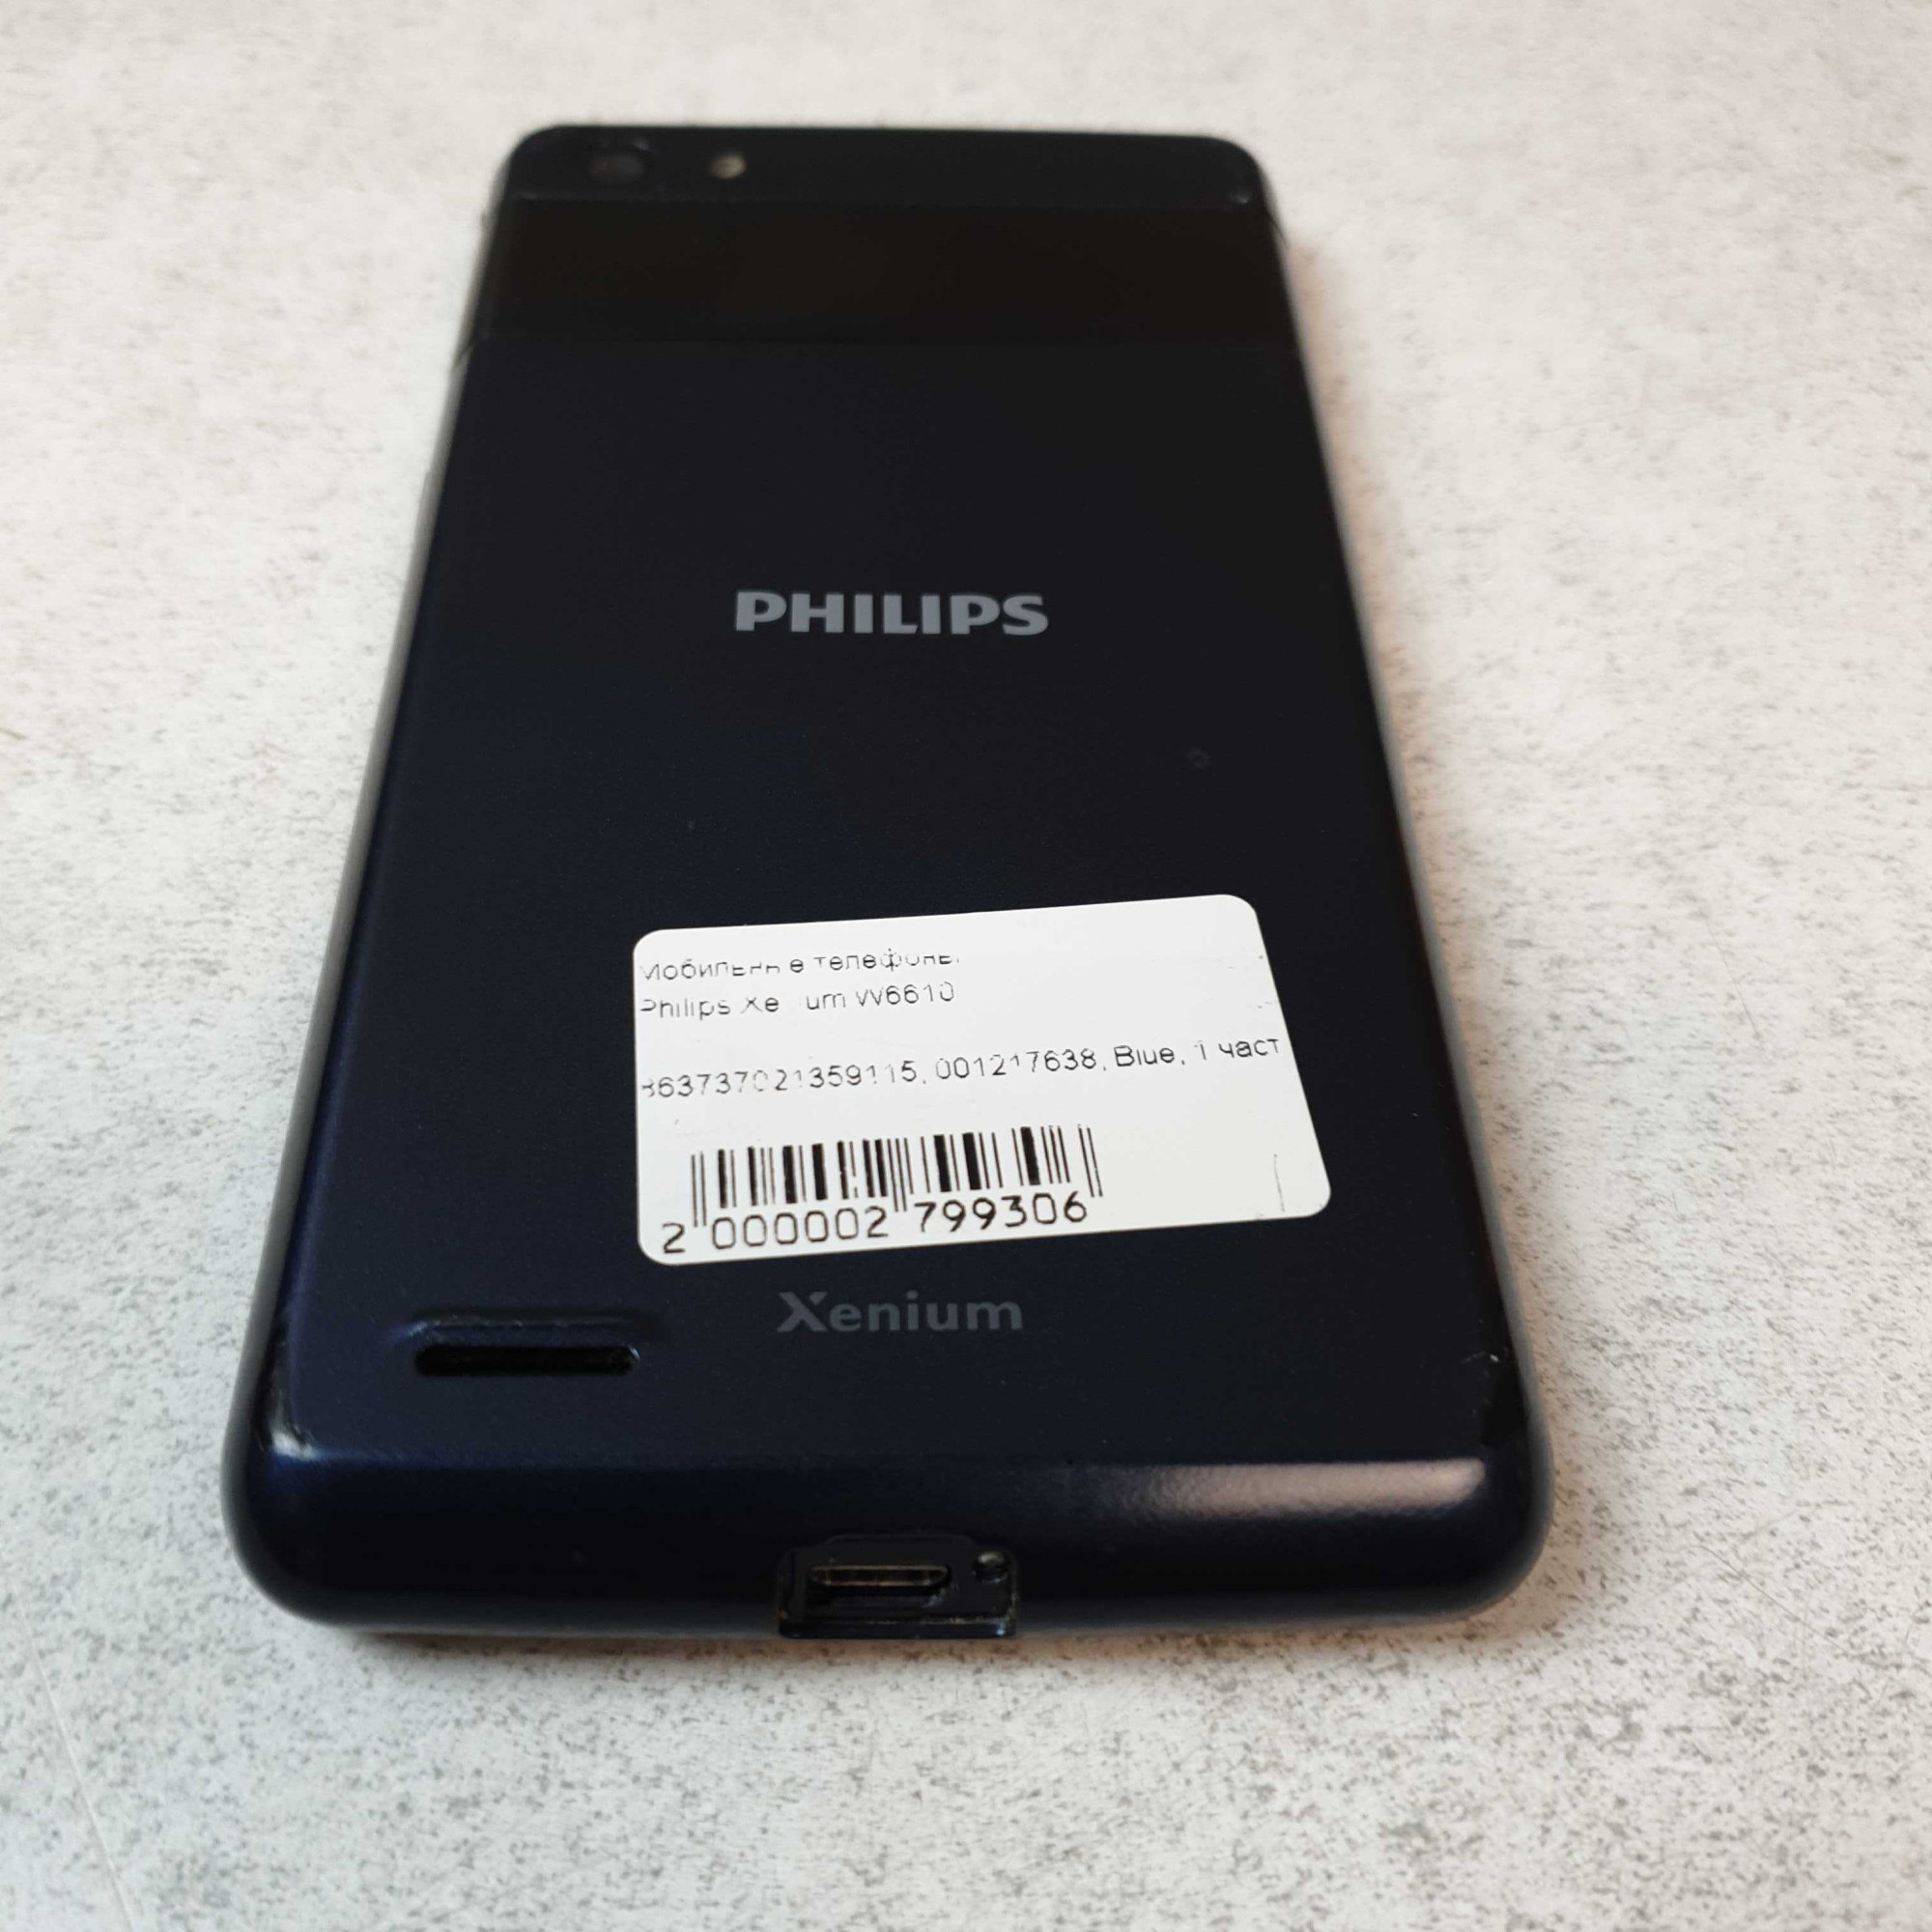 Philips Xenium W6610 4